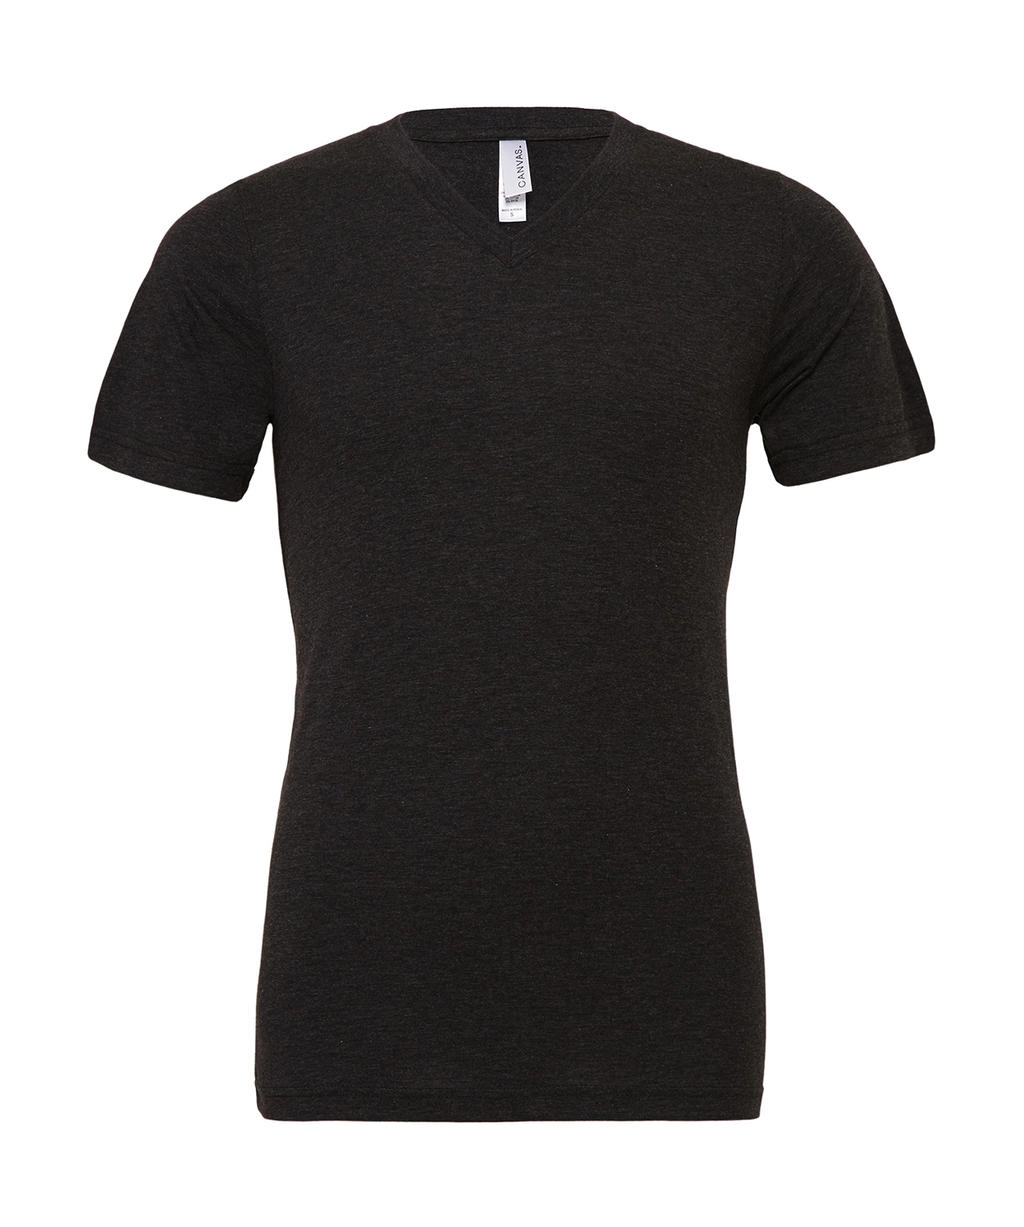 Unisex Triblend V-Neck T-Shirt zum Besticken und Bedrucken mit Ihren Logo, Schriftzug oder Motiv.